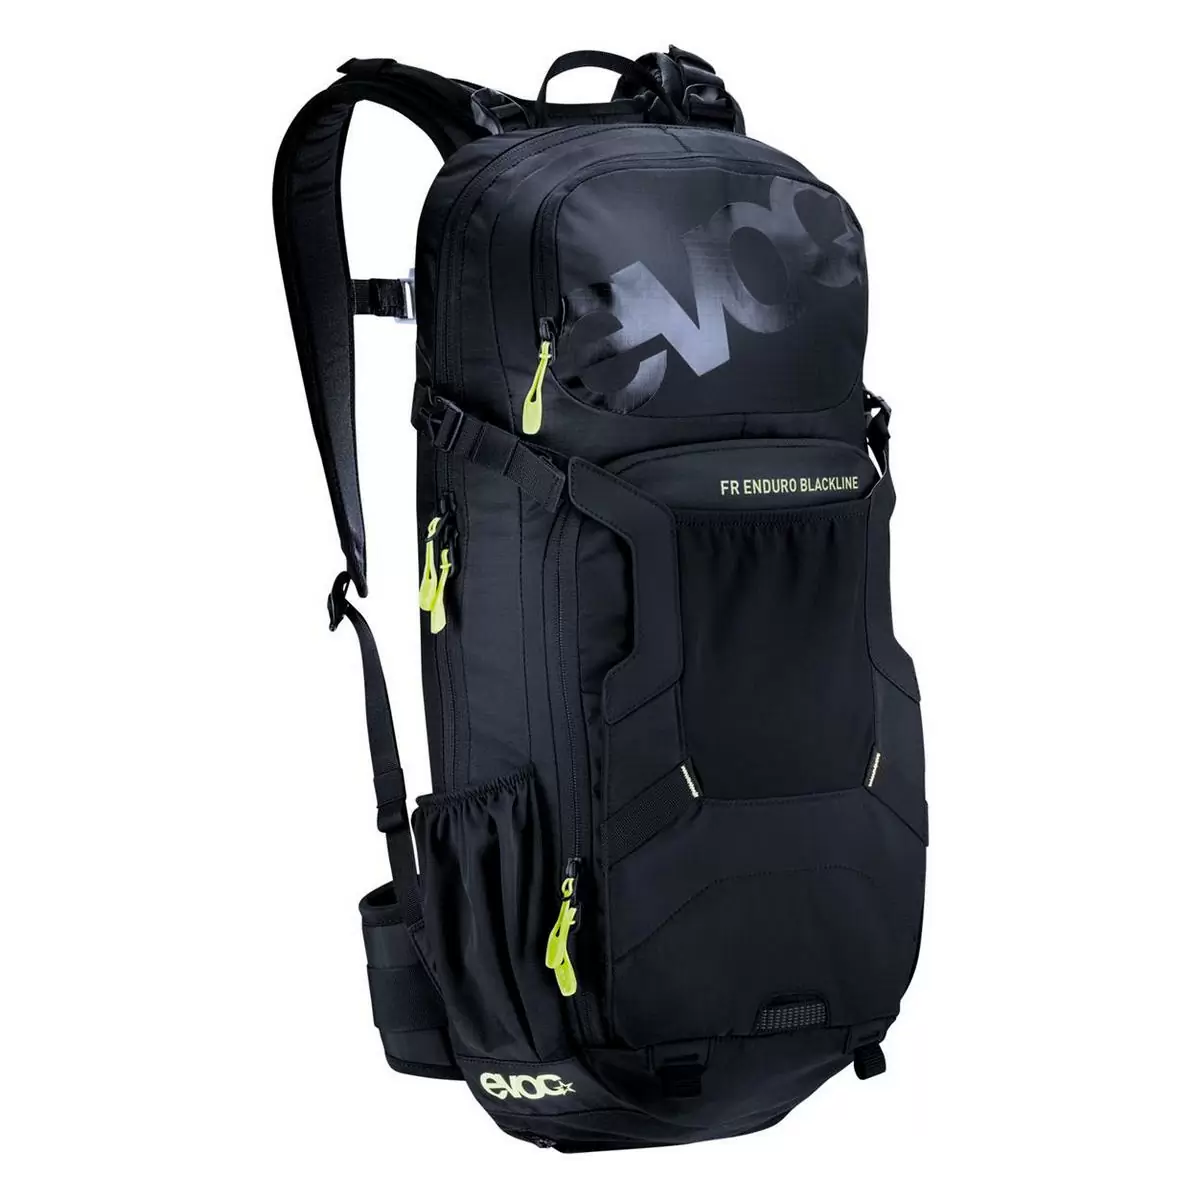 FR enduro blackline backpack 16lt with back protector size M/L - image